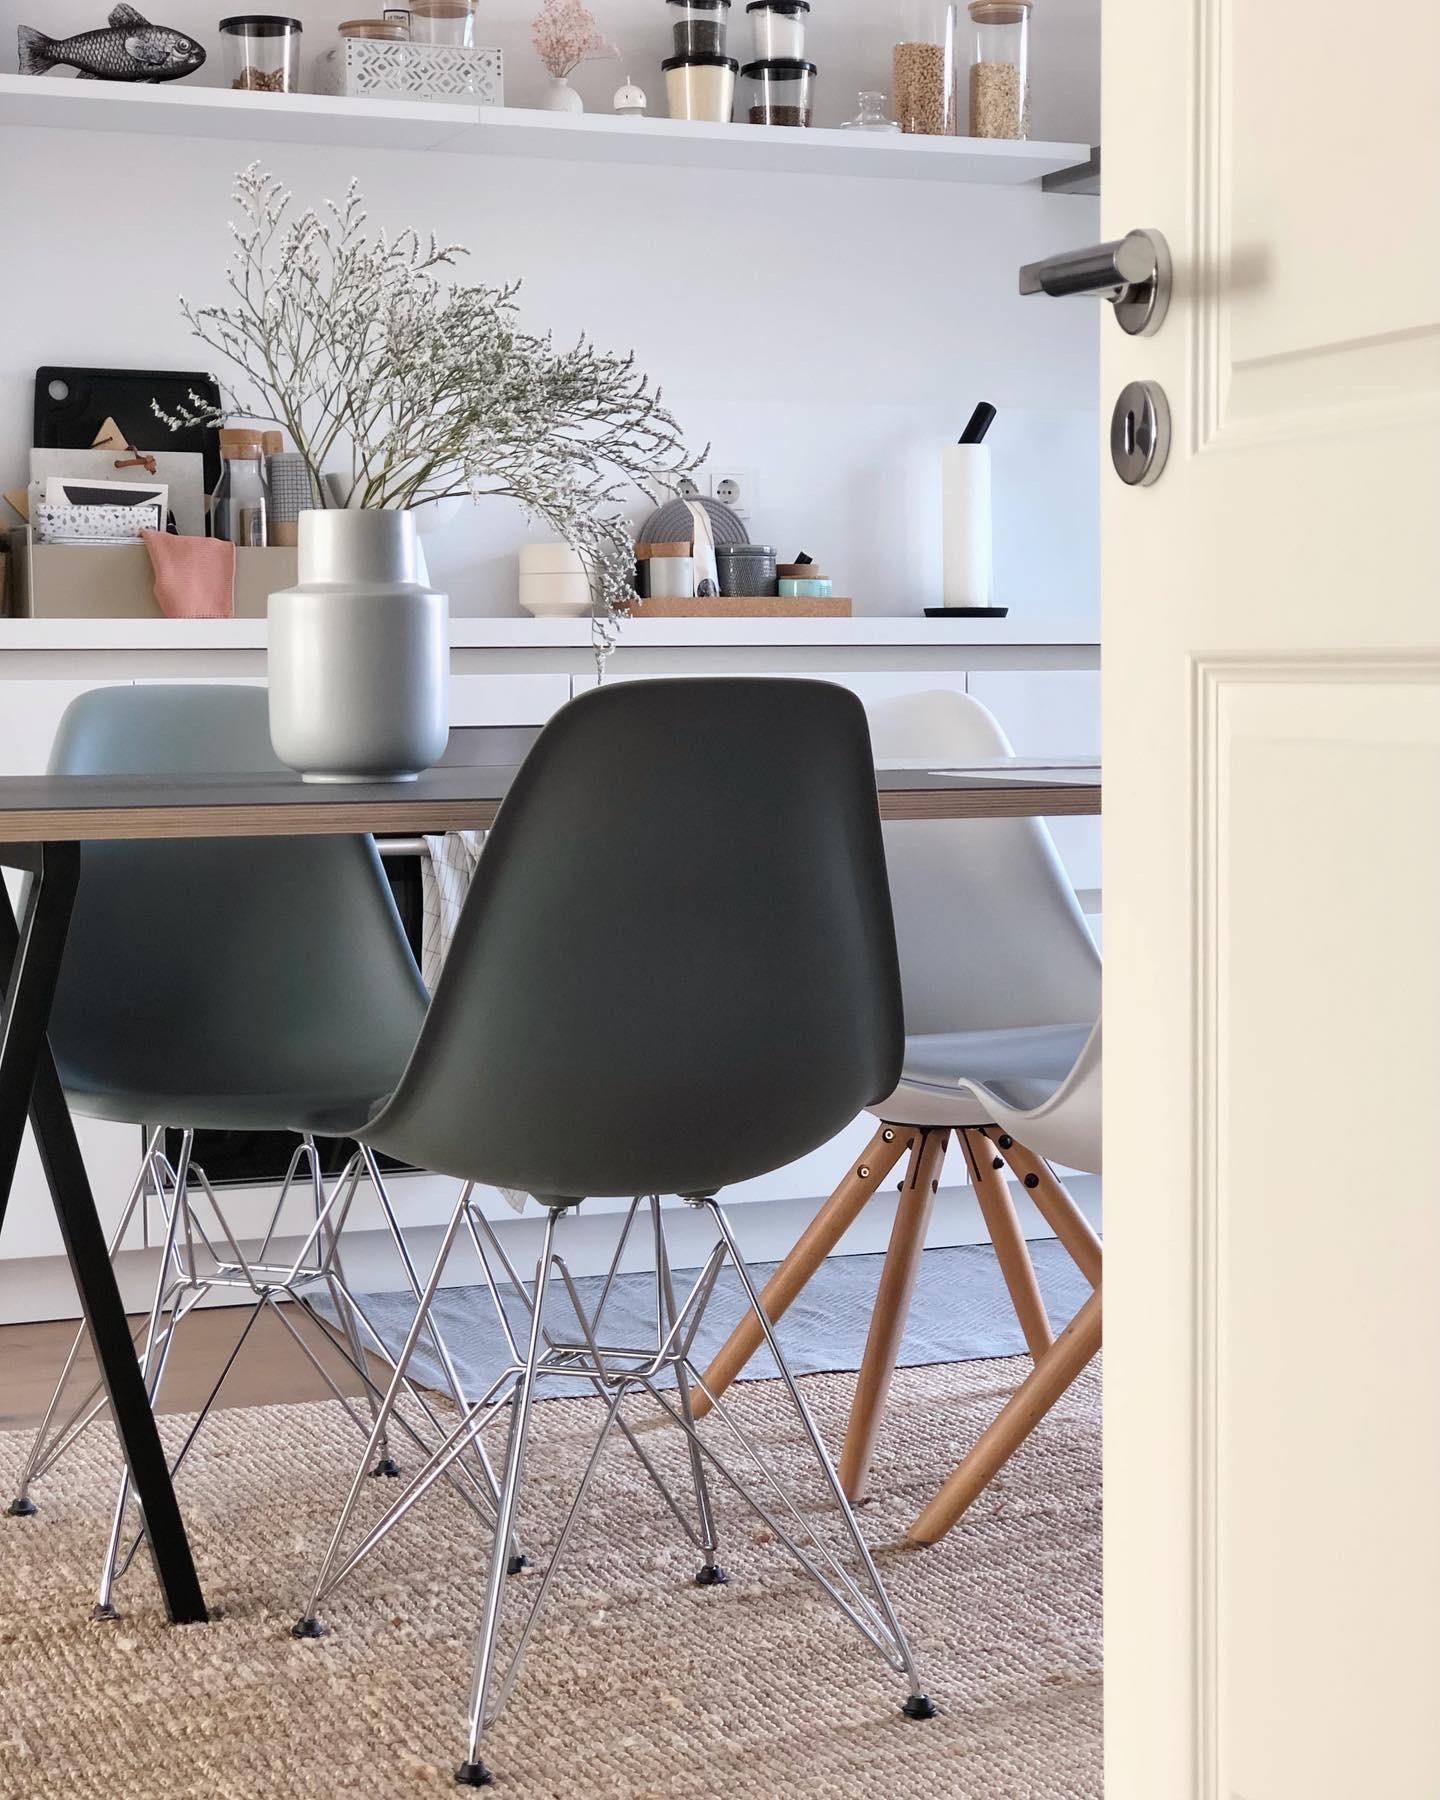 #esstisch #diningtable #table #kitchen #küche #regal #esszimmer #deko #interior #interiordesign #minimalism #couchstyle